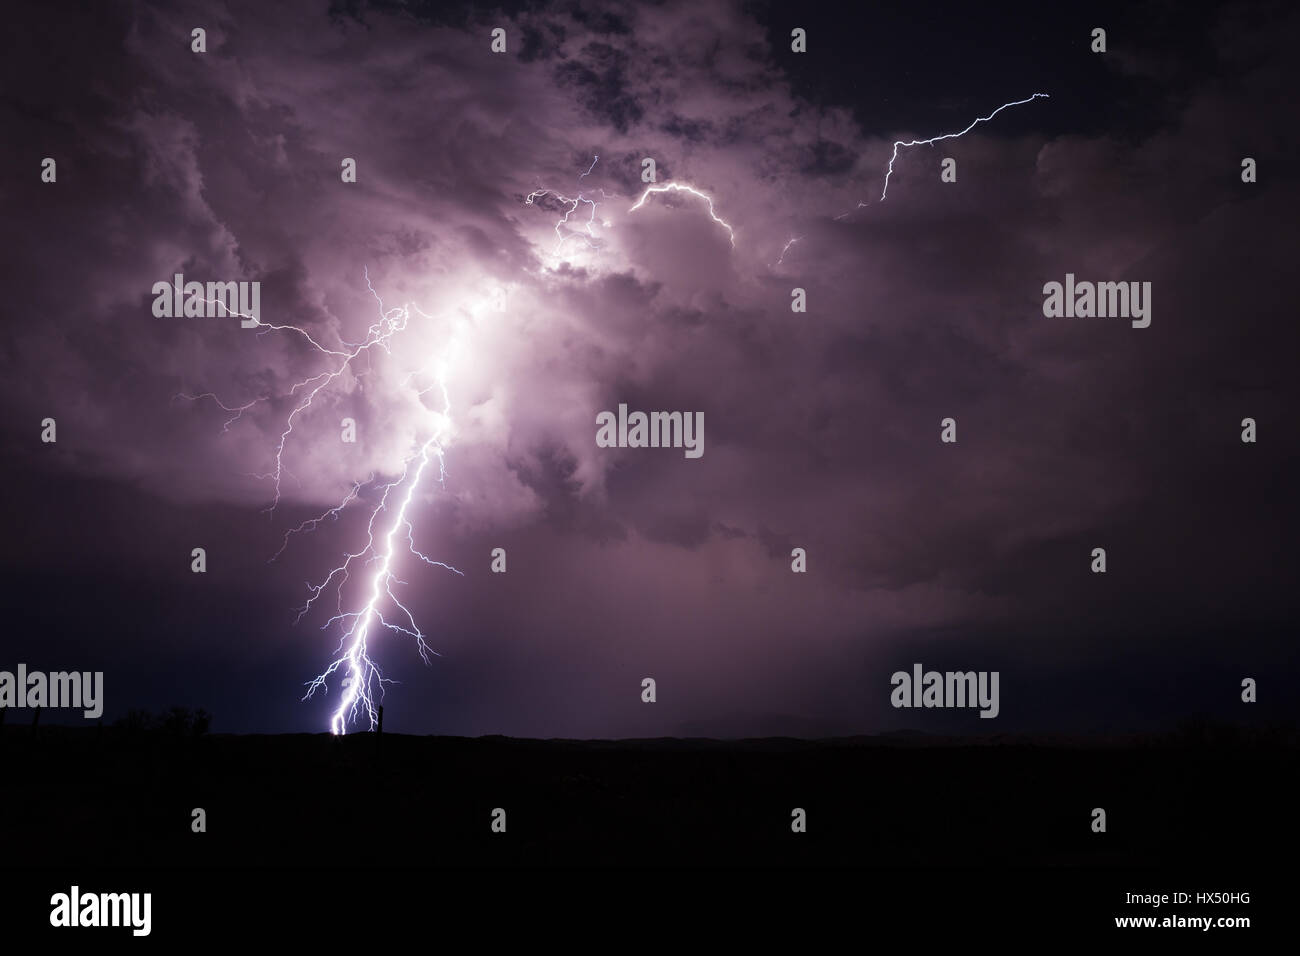 Un potente rayo ilumina una tormenta en el cielo nocturno Foto de stock